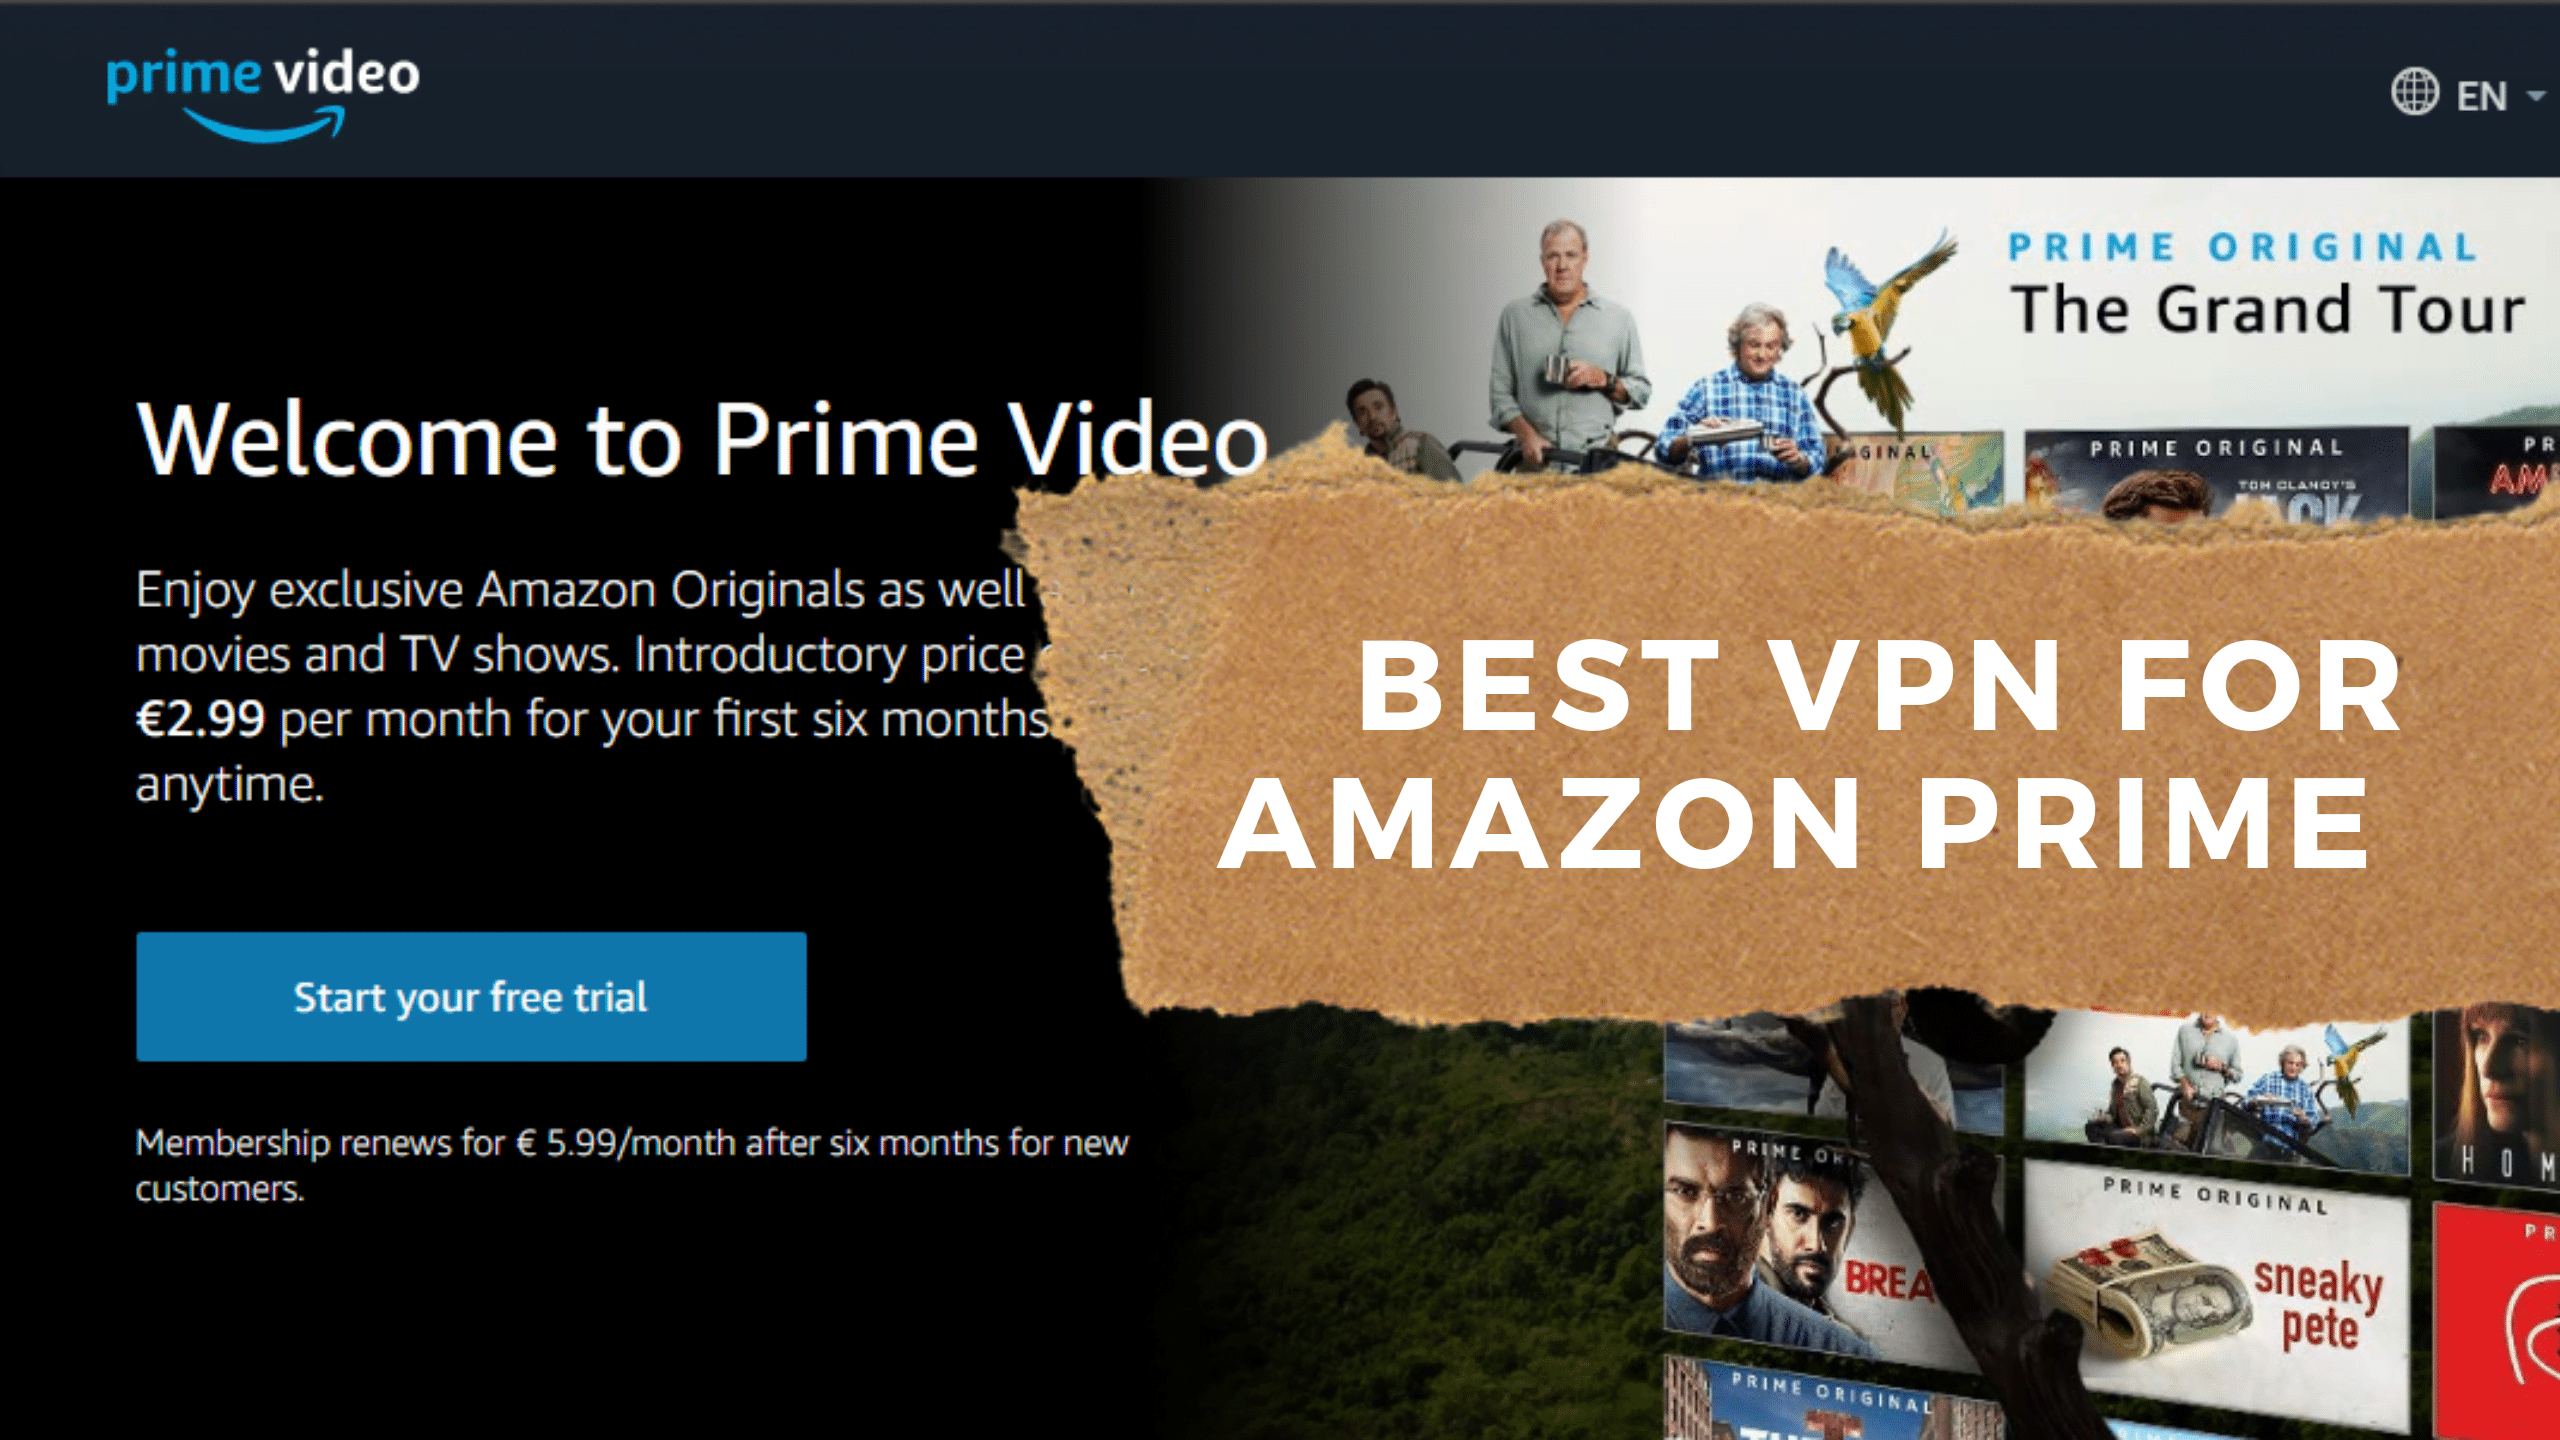 amazon prime video with vpn